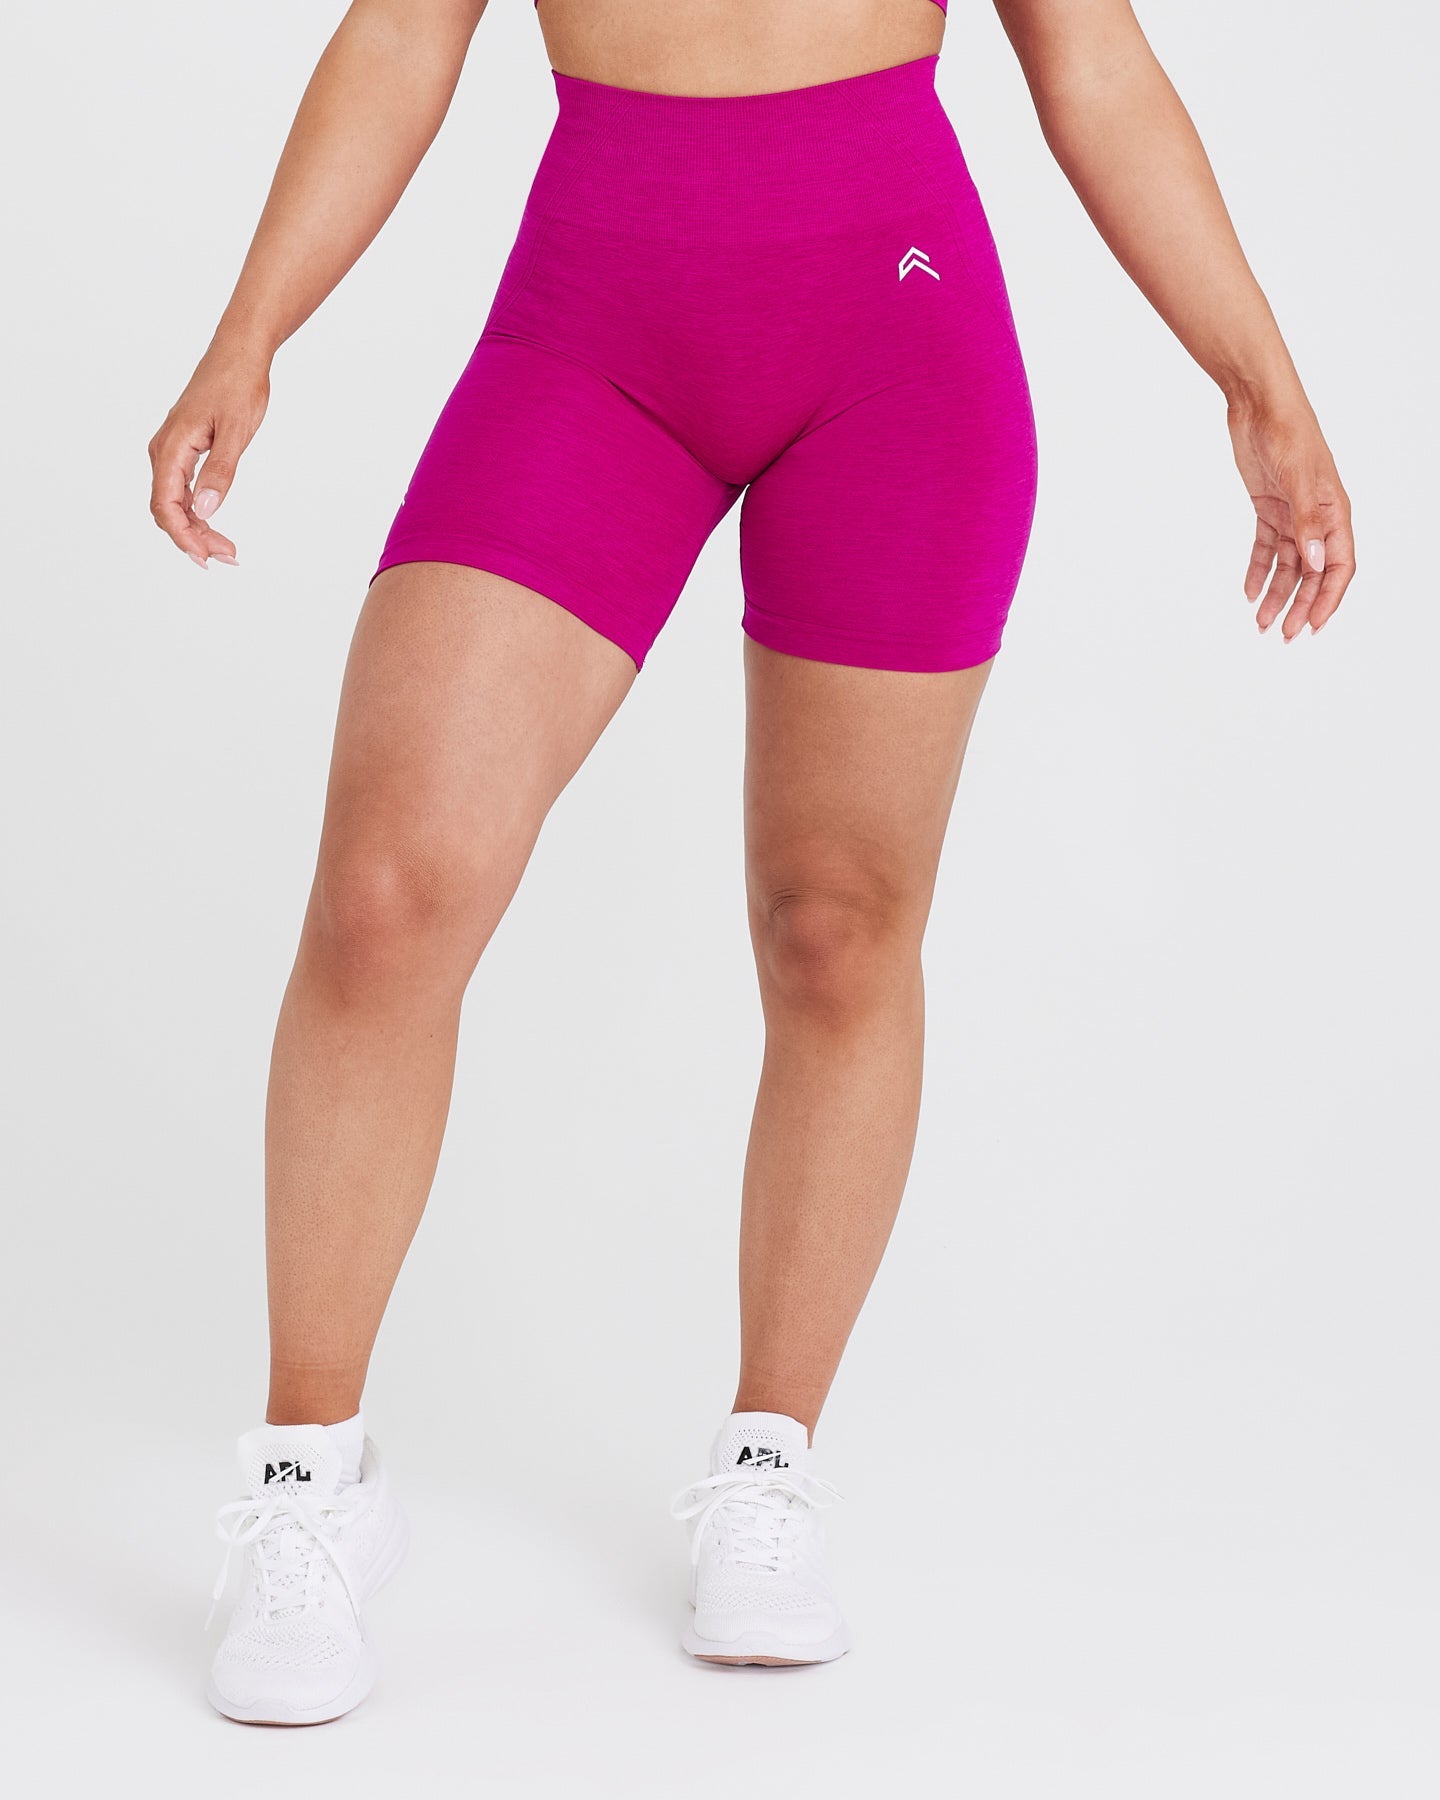 Hot Pink Wildfire Women's Gym Shorts (3 Inseam)